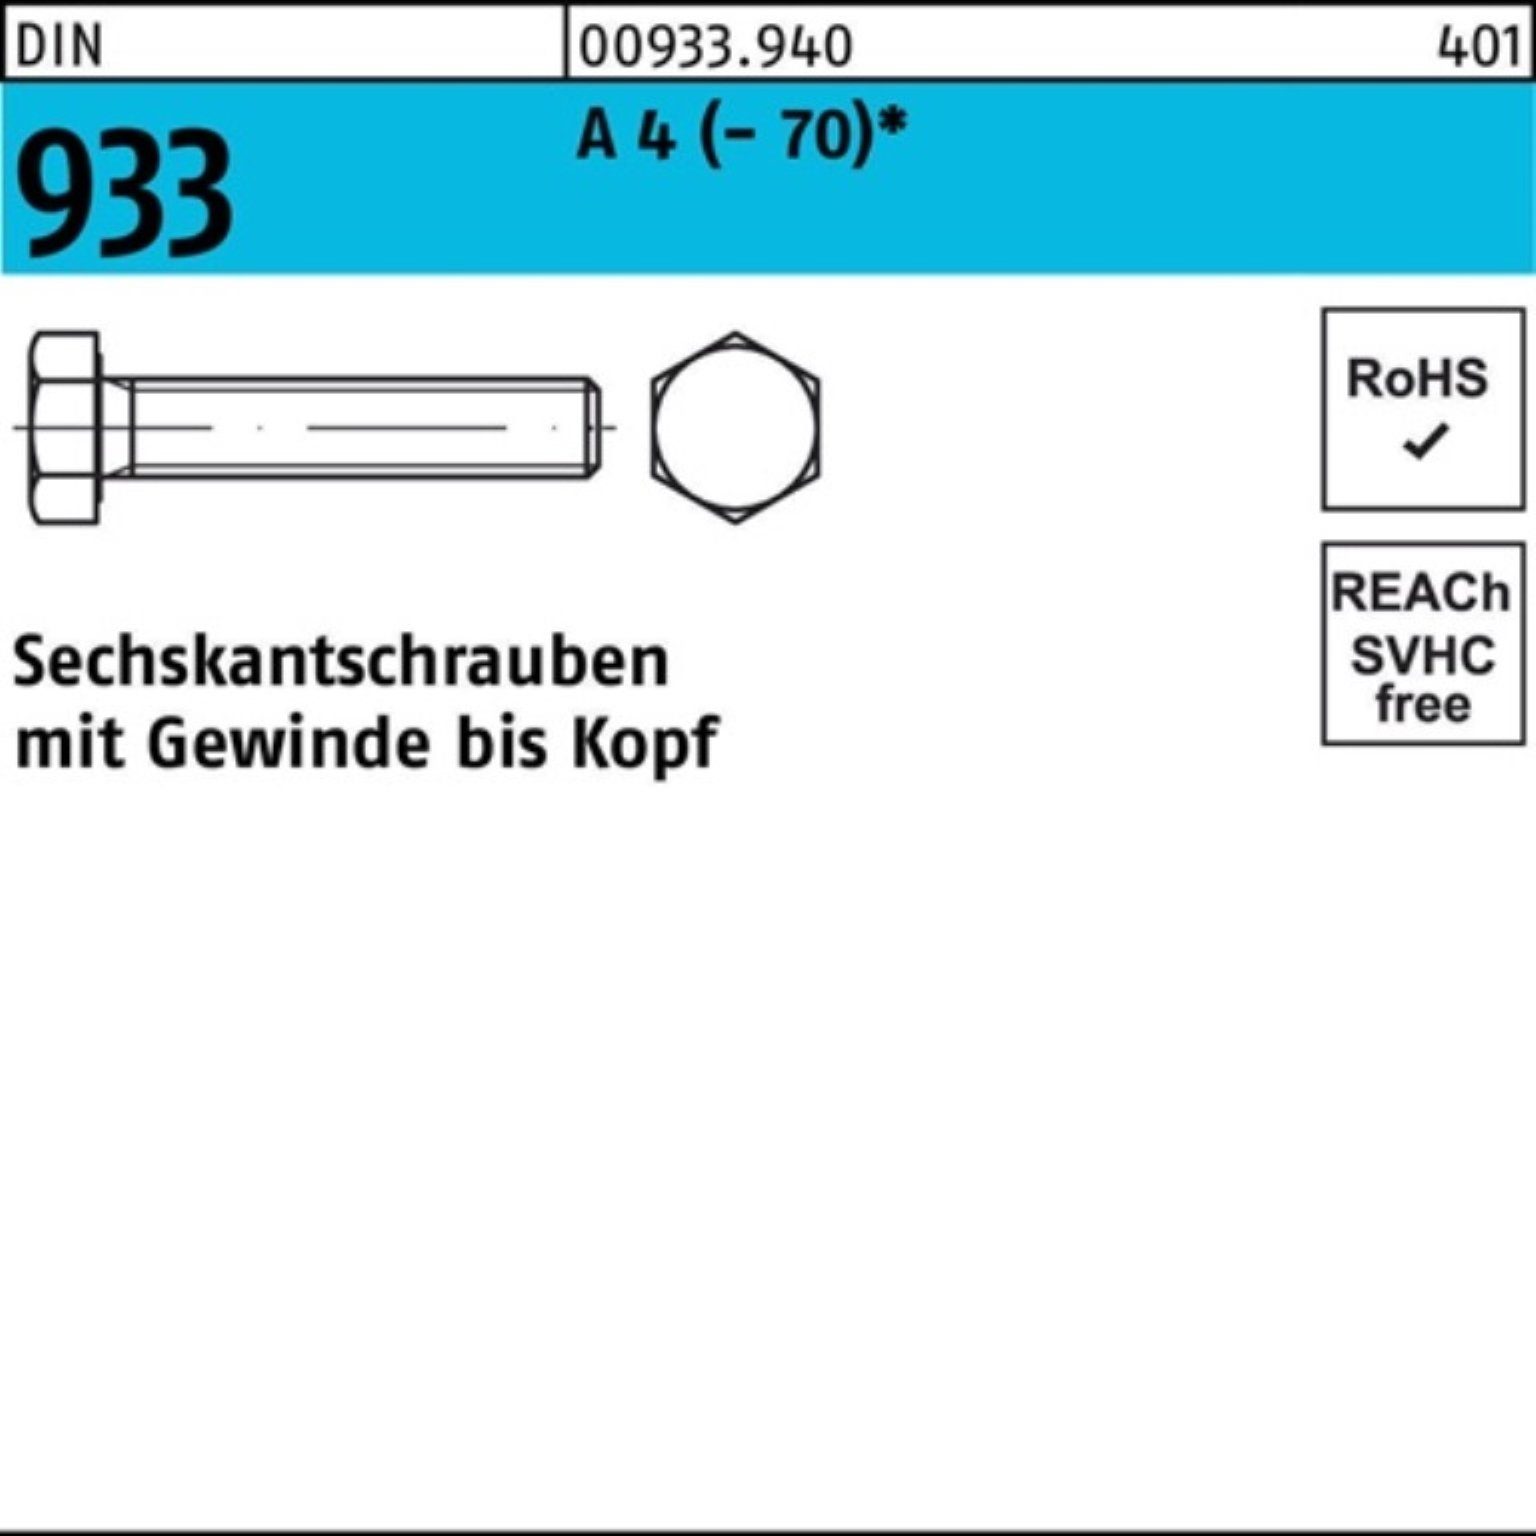 Reyher 4 (70) A VG Sechskantschraube 100er 1 933 60 DI Stück Sechskantschraube Pack M30x DIN